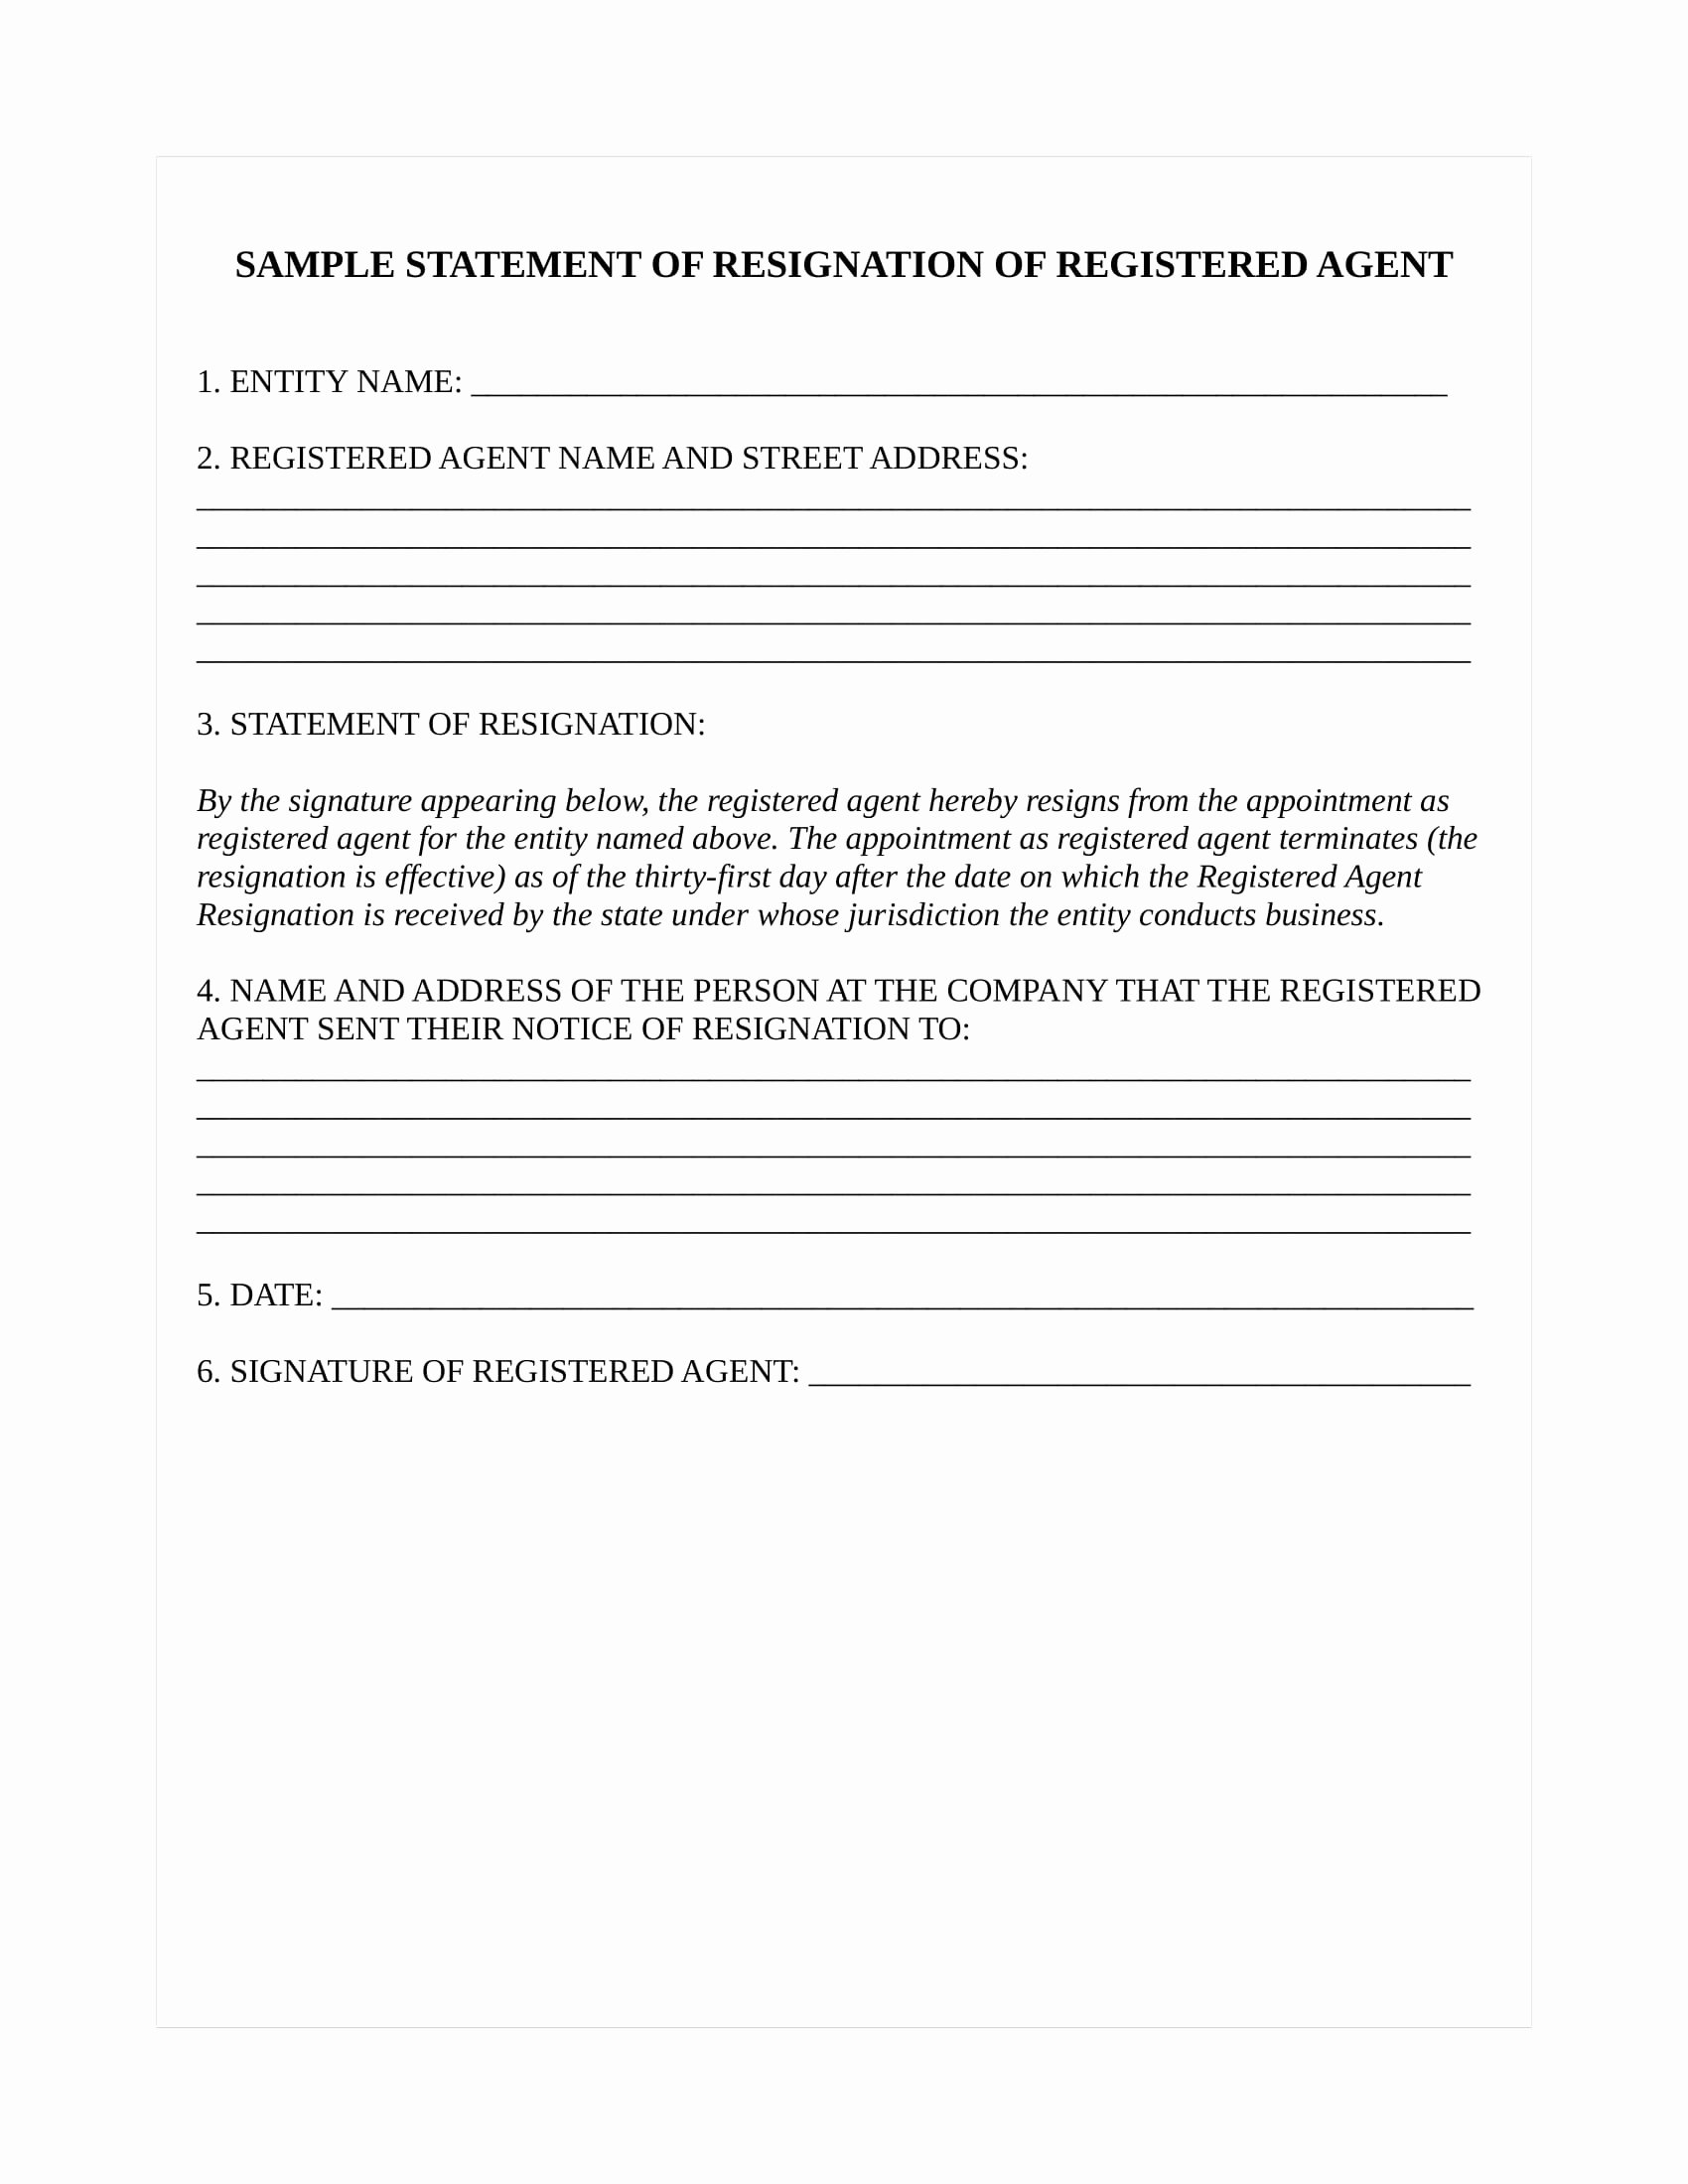 Form Letter Of Resignation Elegant How to Resign as Registered Agent for Minnesota Llc or